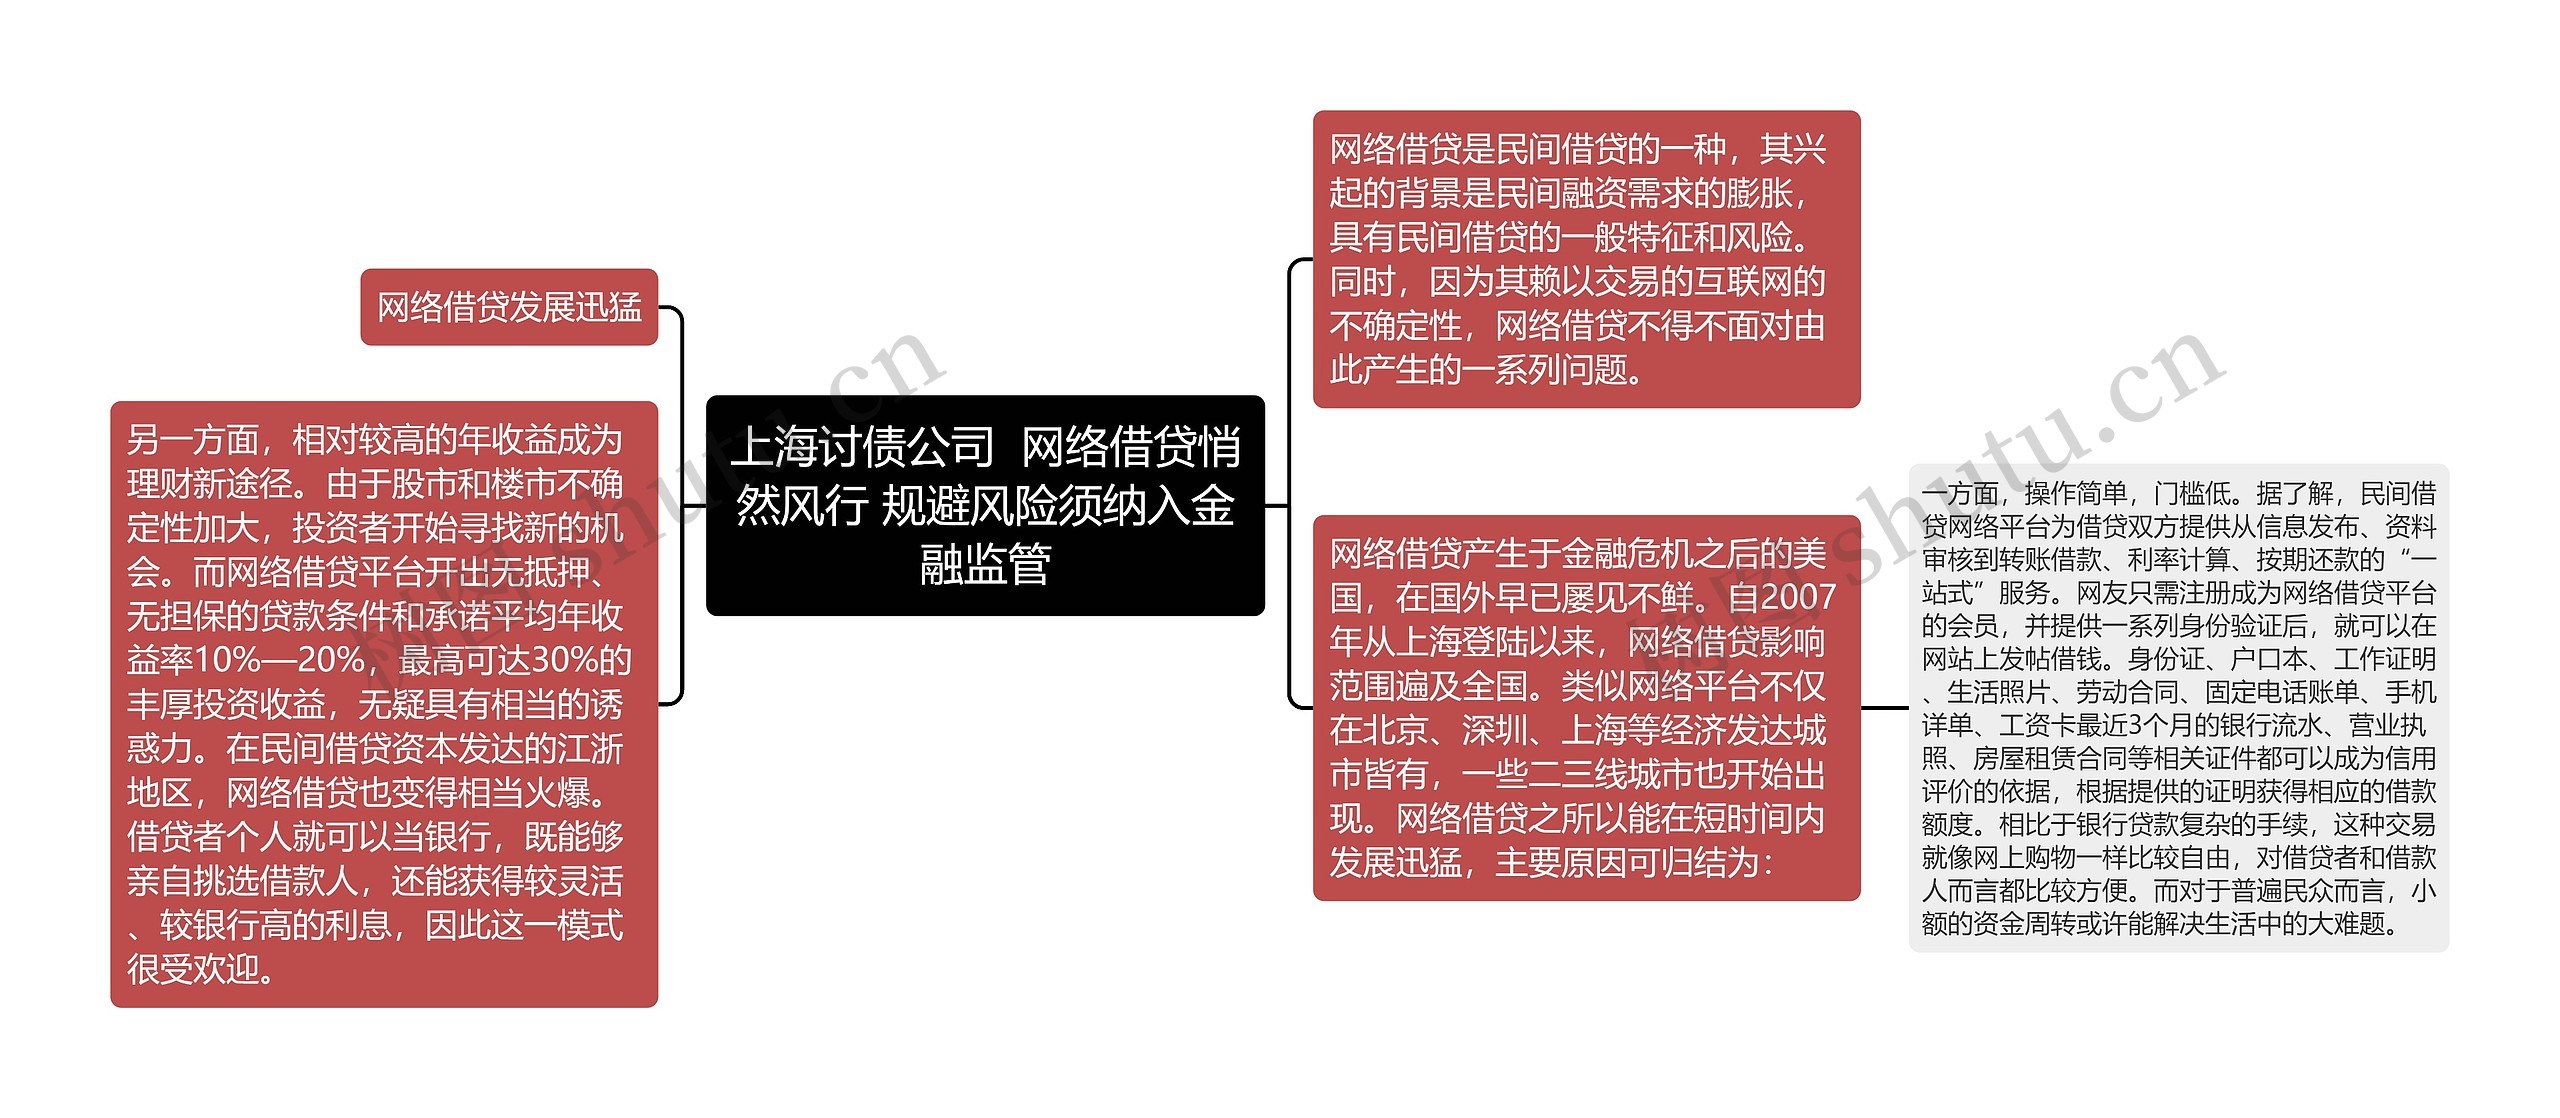 上海讨债公司  网络借贷悄然风行 规避风险须纳入金融监管